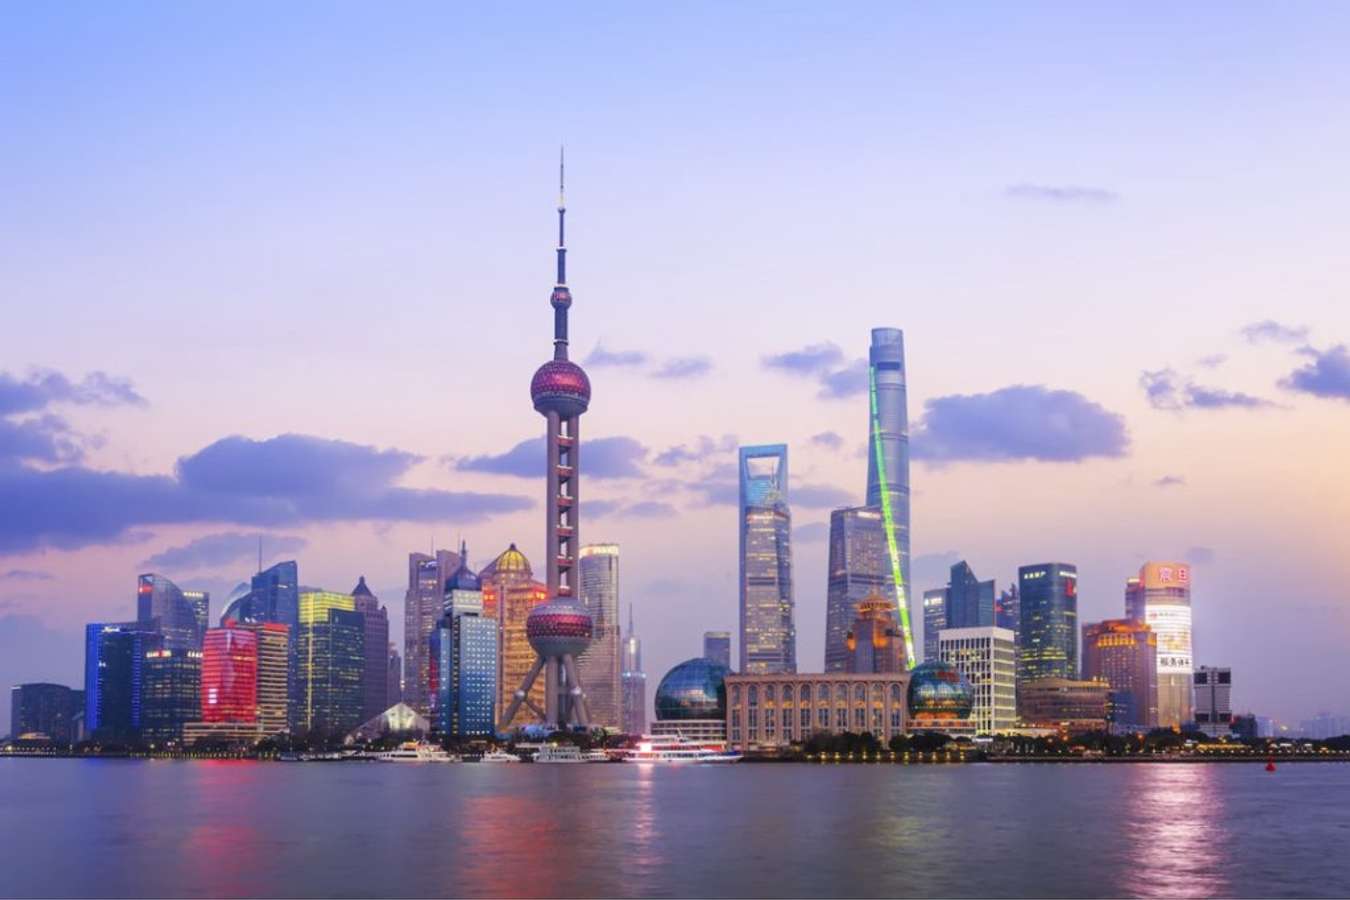 Tháp truyền hình Minh Châu Phương Đông - biểu tượng kiến trúc giữa lòng Thượng Hải